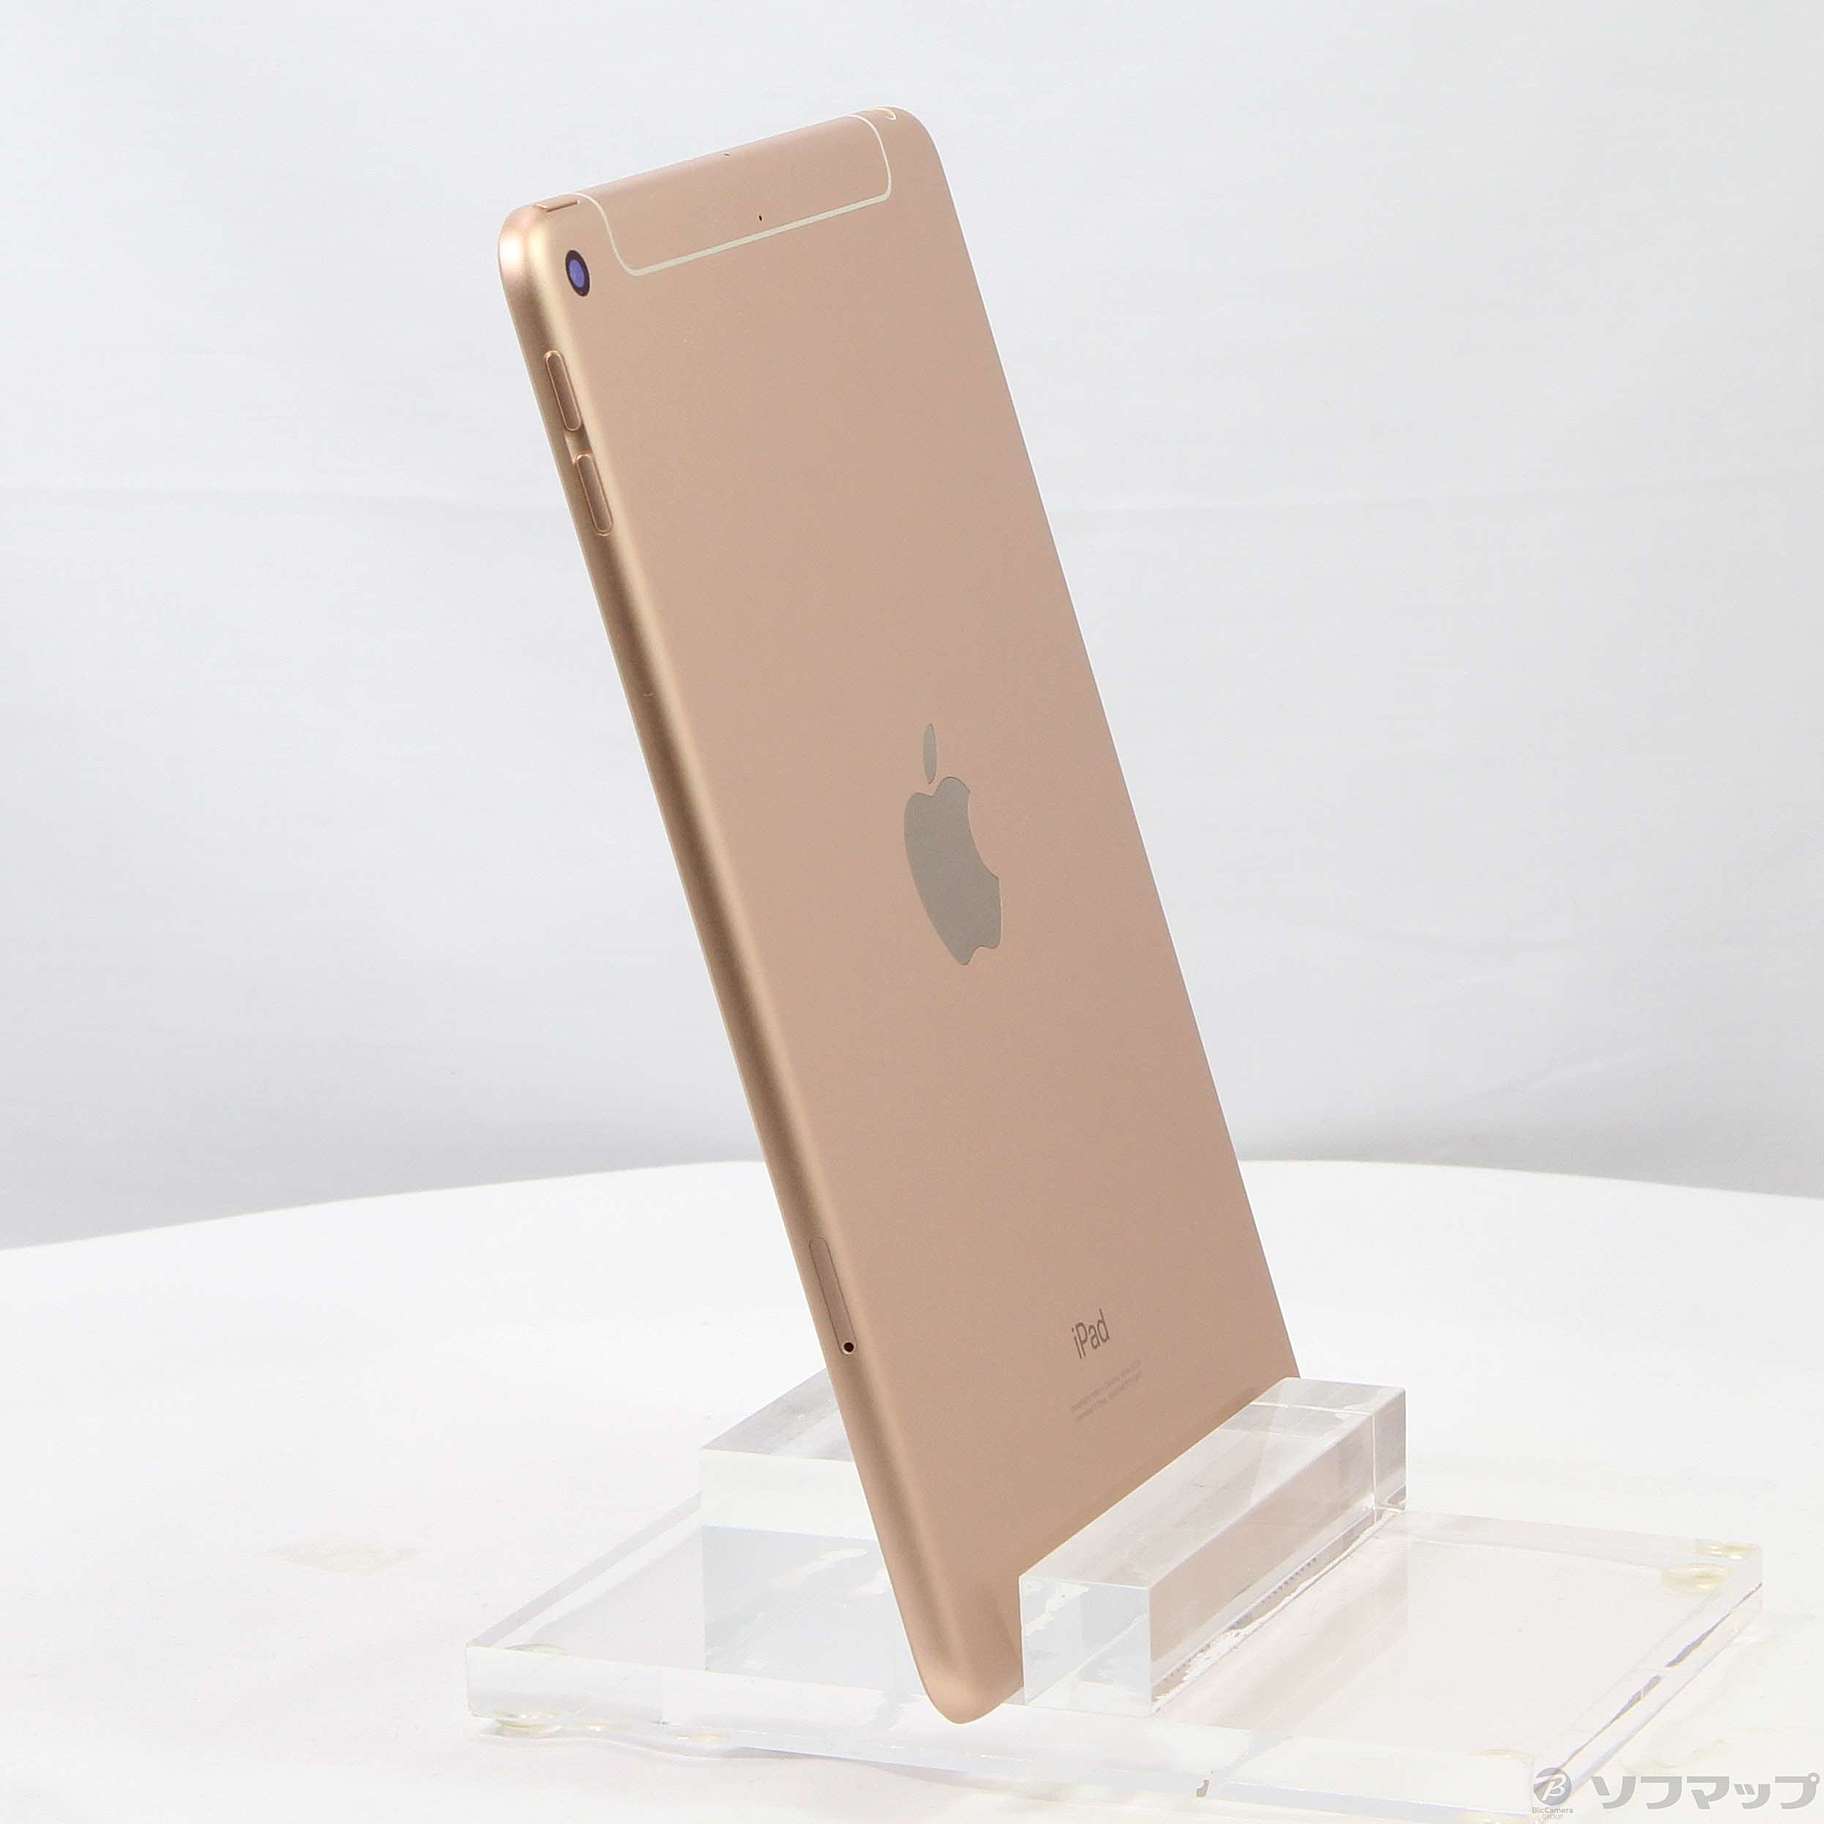 iPad mini 5 Cellular simフリー 新品未開封 Gold-